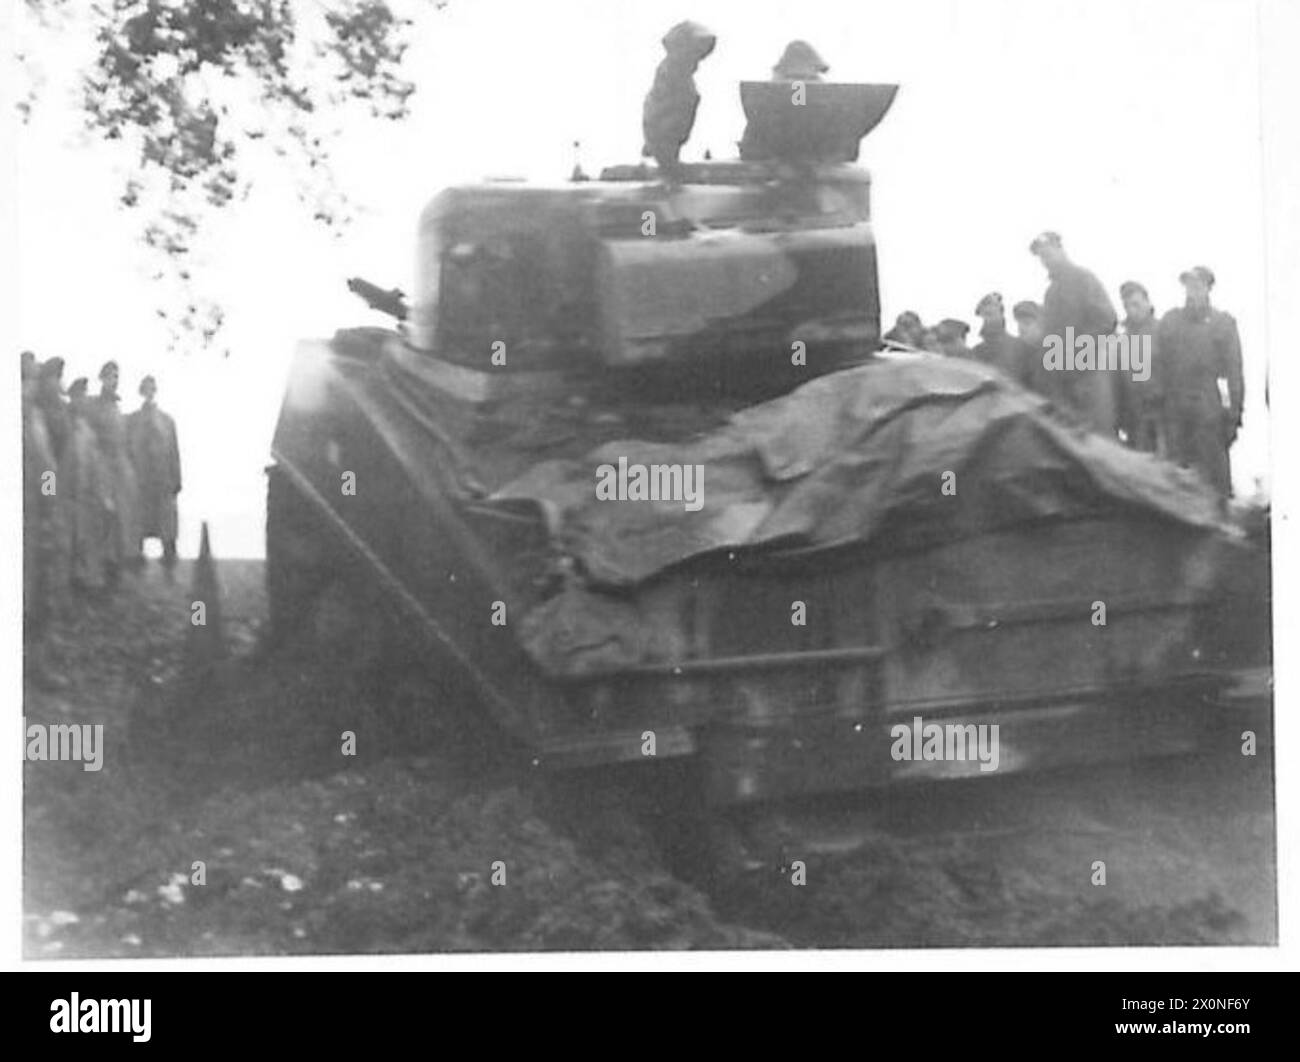 ITALIE : CINQUIÈME ARMÉE - Un char Sherman de la 23e Brigade blindée donnant une démonstration aux officiers et sous-officiers de la Brigade le char est vu opérant sur terrain meuble. Négatif photographique, Armée britannique Banque D'Images